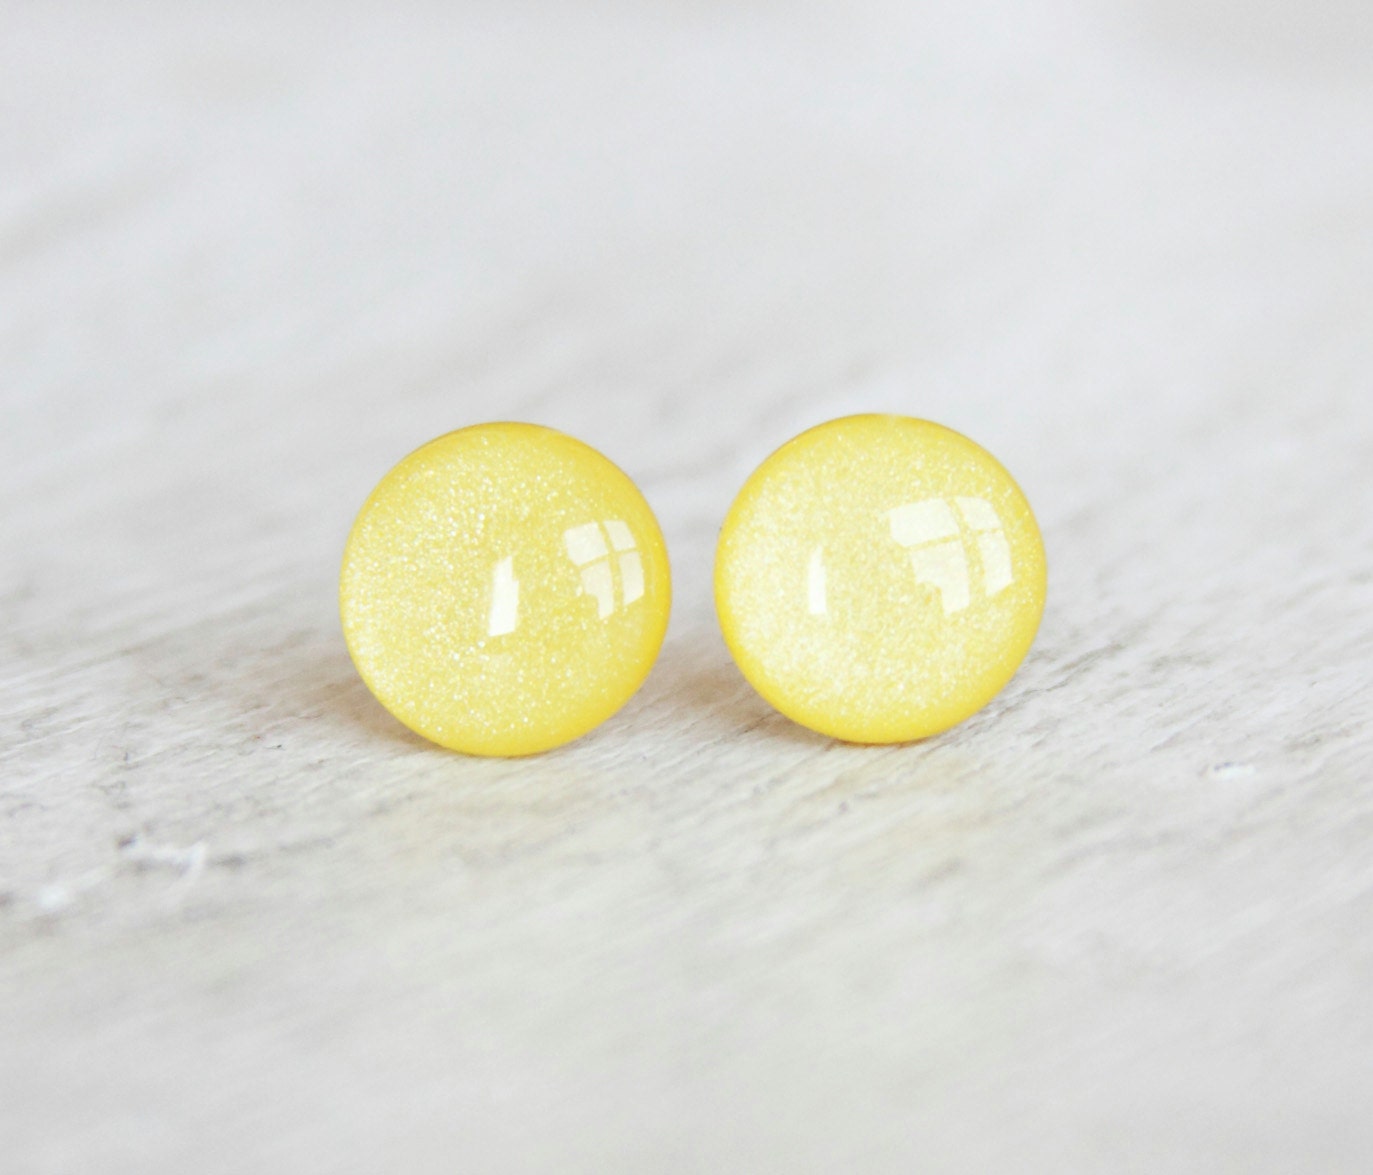 SUN KISS - Yellow Earrings - Stud Earrings - Post Earrings in a Shimmery Light Yellow - Handmade by EarSugar - EarSugar